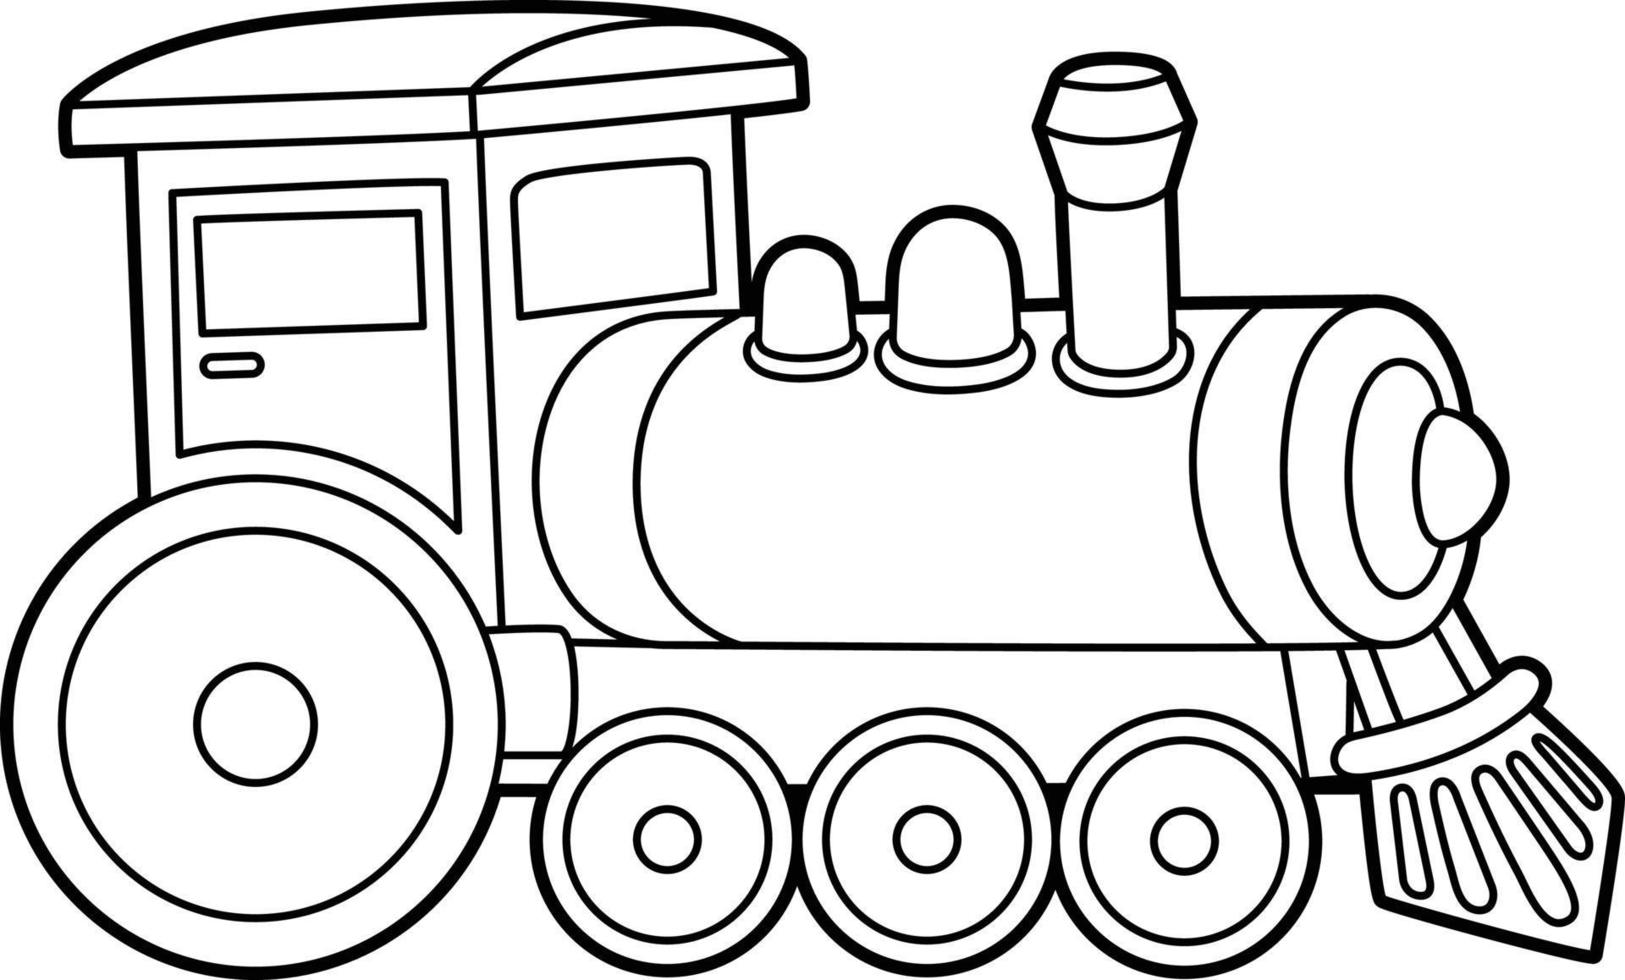 locomotora de vapor para colorear página aislada para niños 5162986 Vector  en Vecteezy